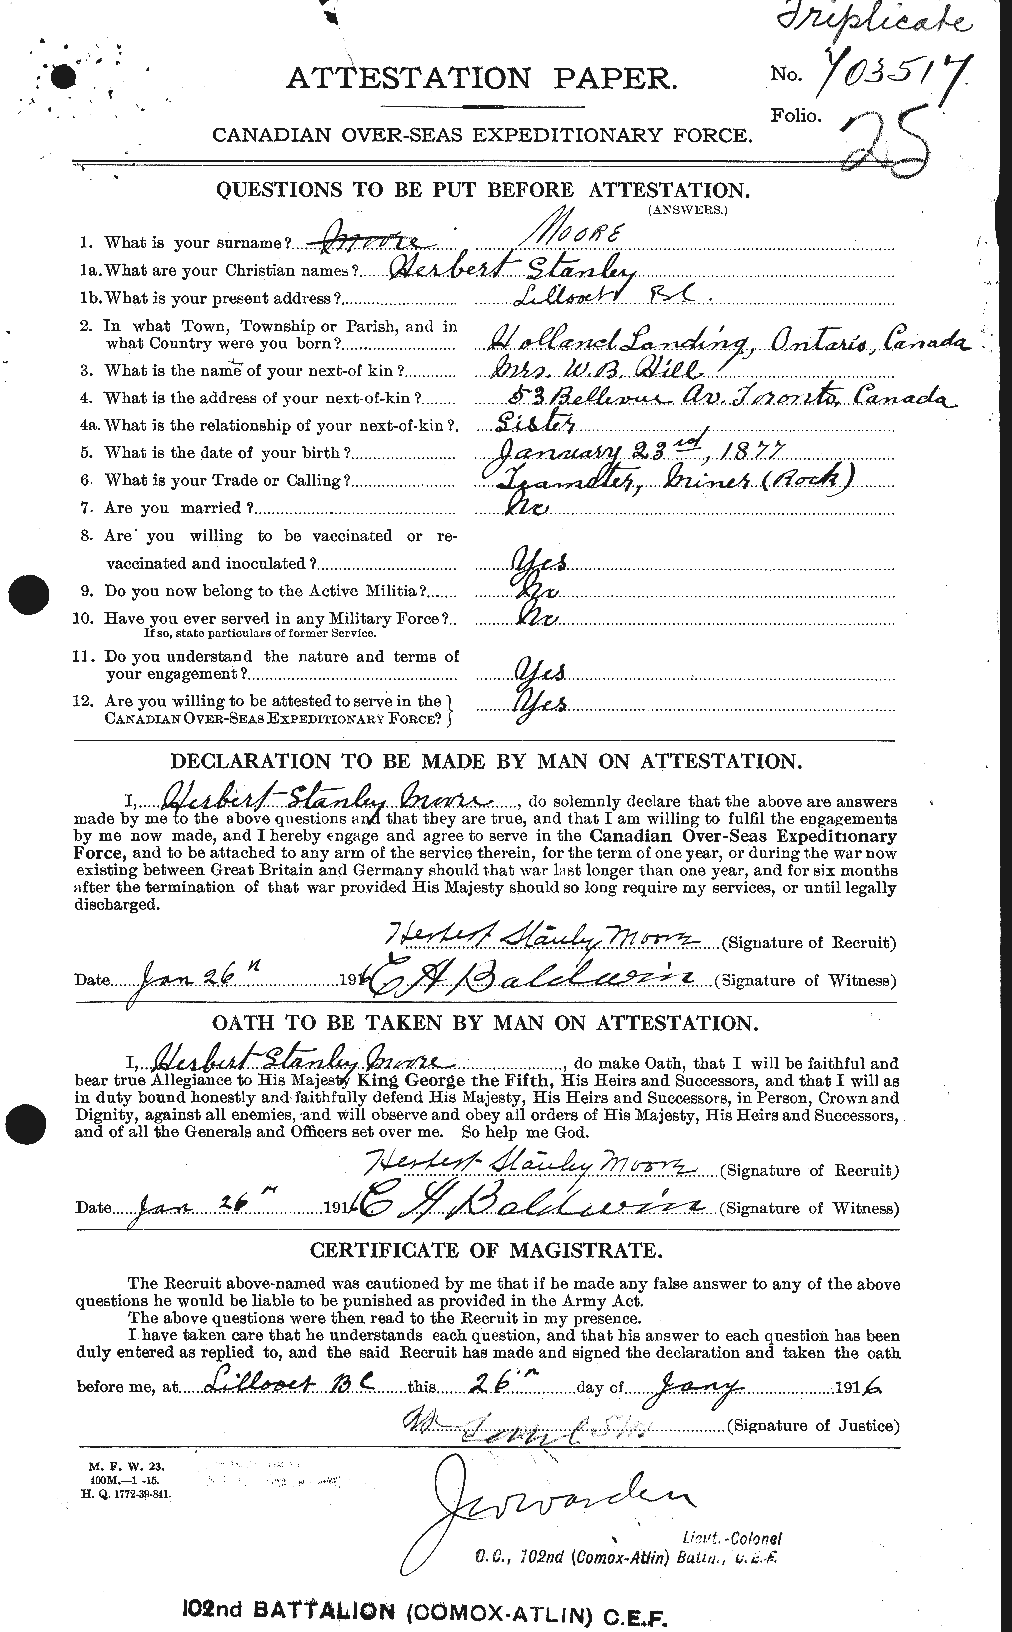 Dossiers du Personnel de la Première Guerre mondiale - CEC 502126a